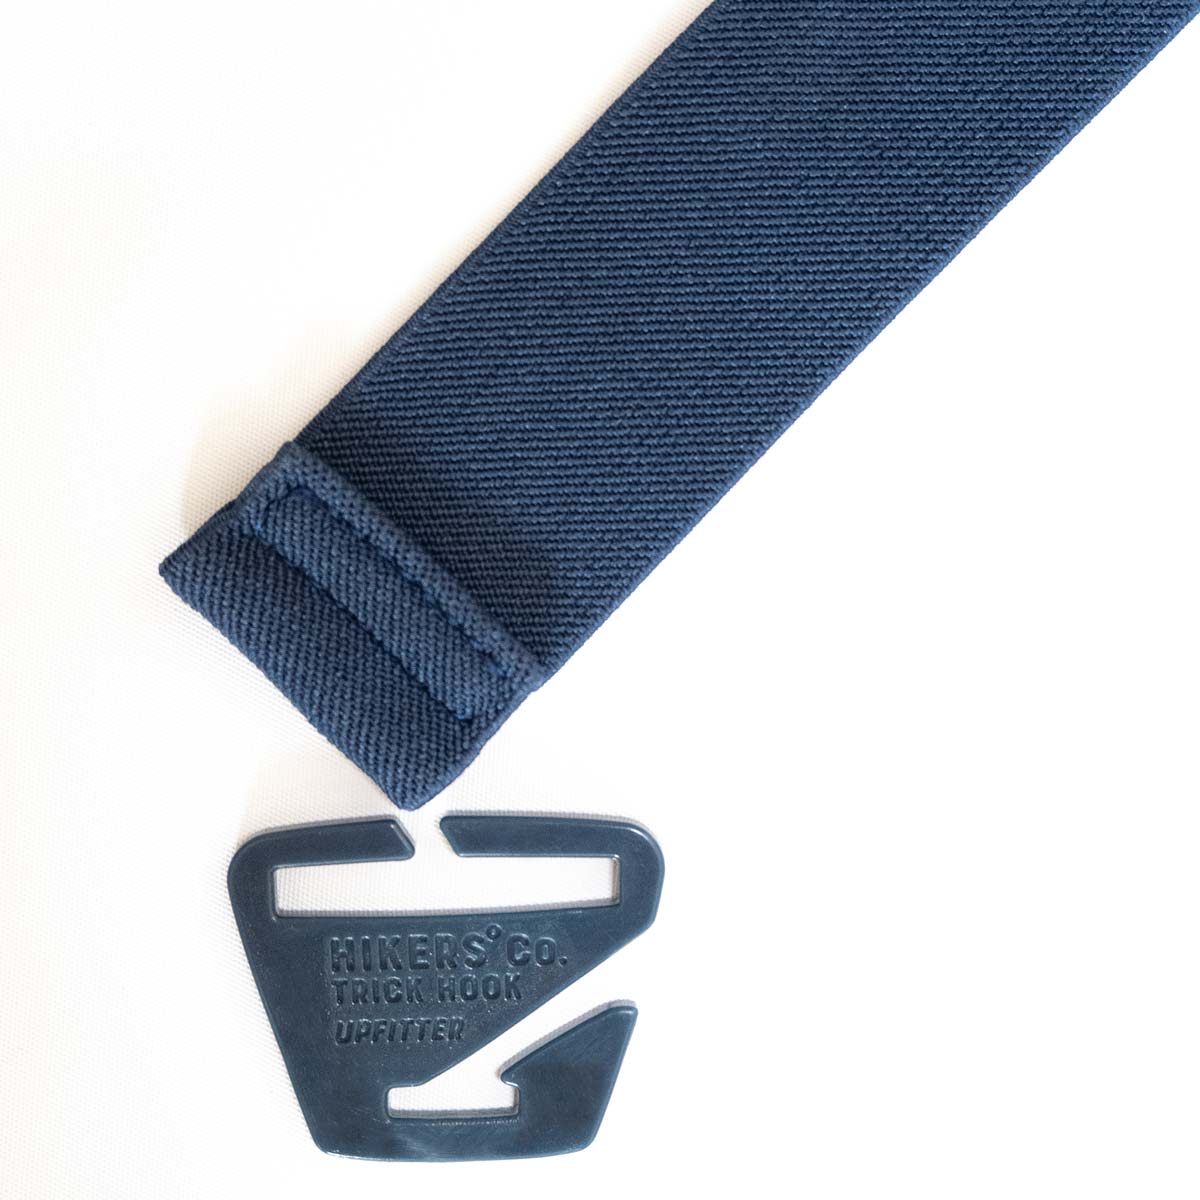 Upfitter® Belt Loop Suspenders in Navy/Black – HIKERS® Co.